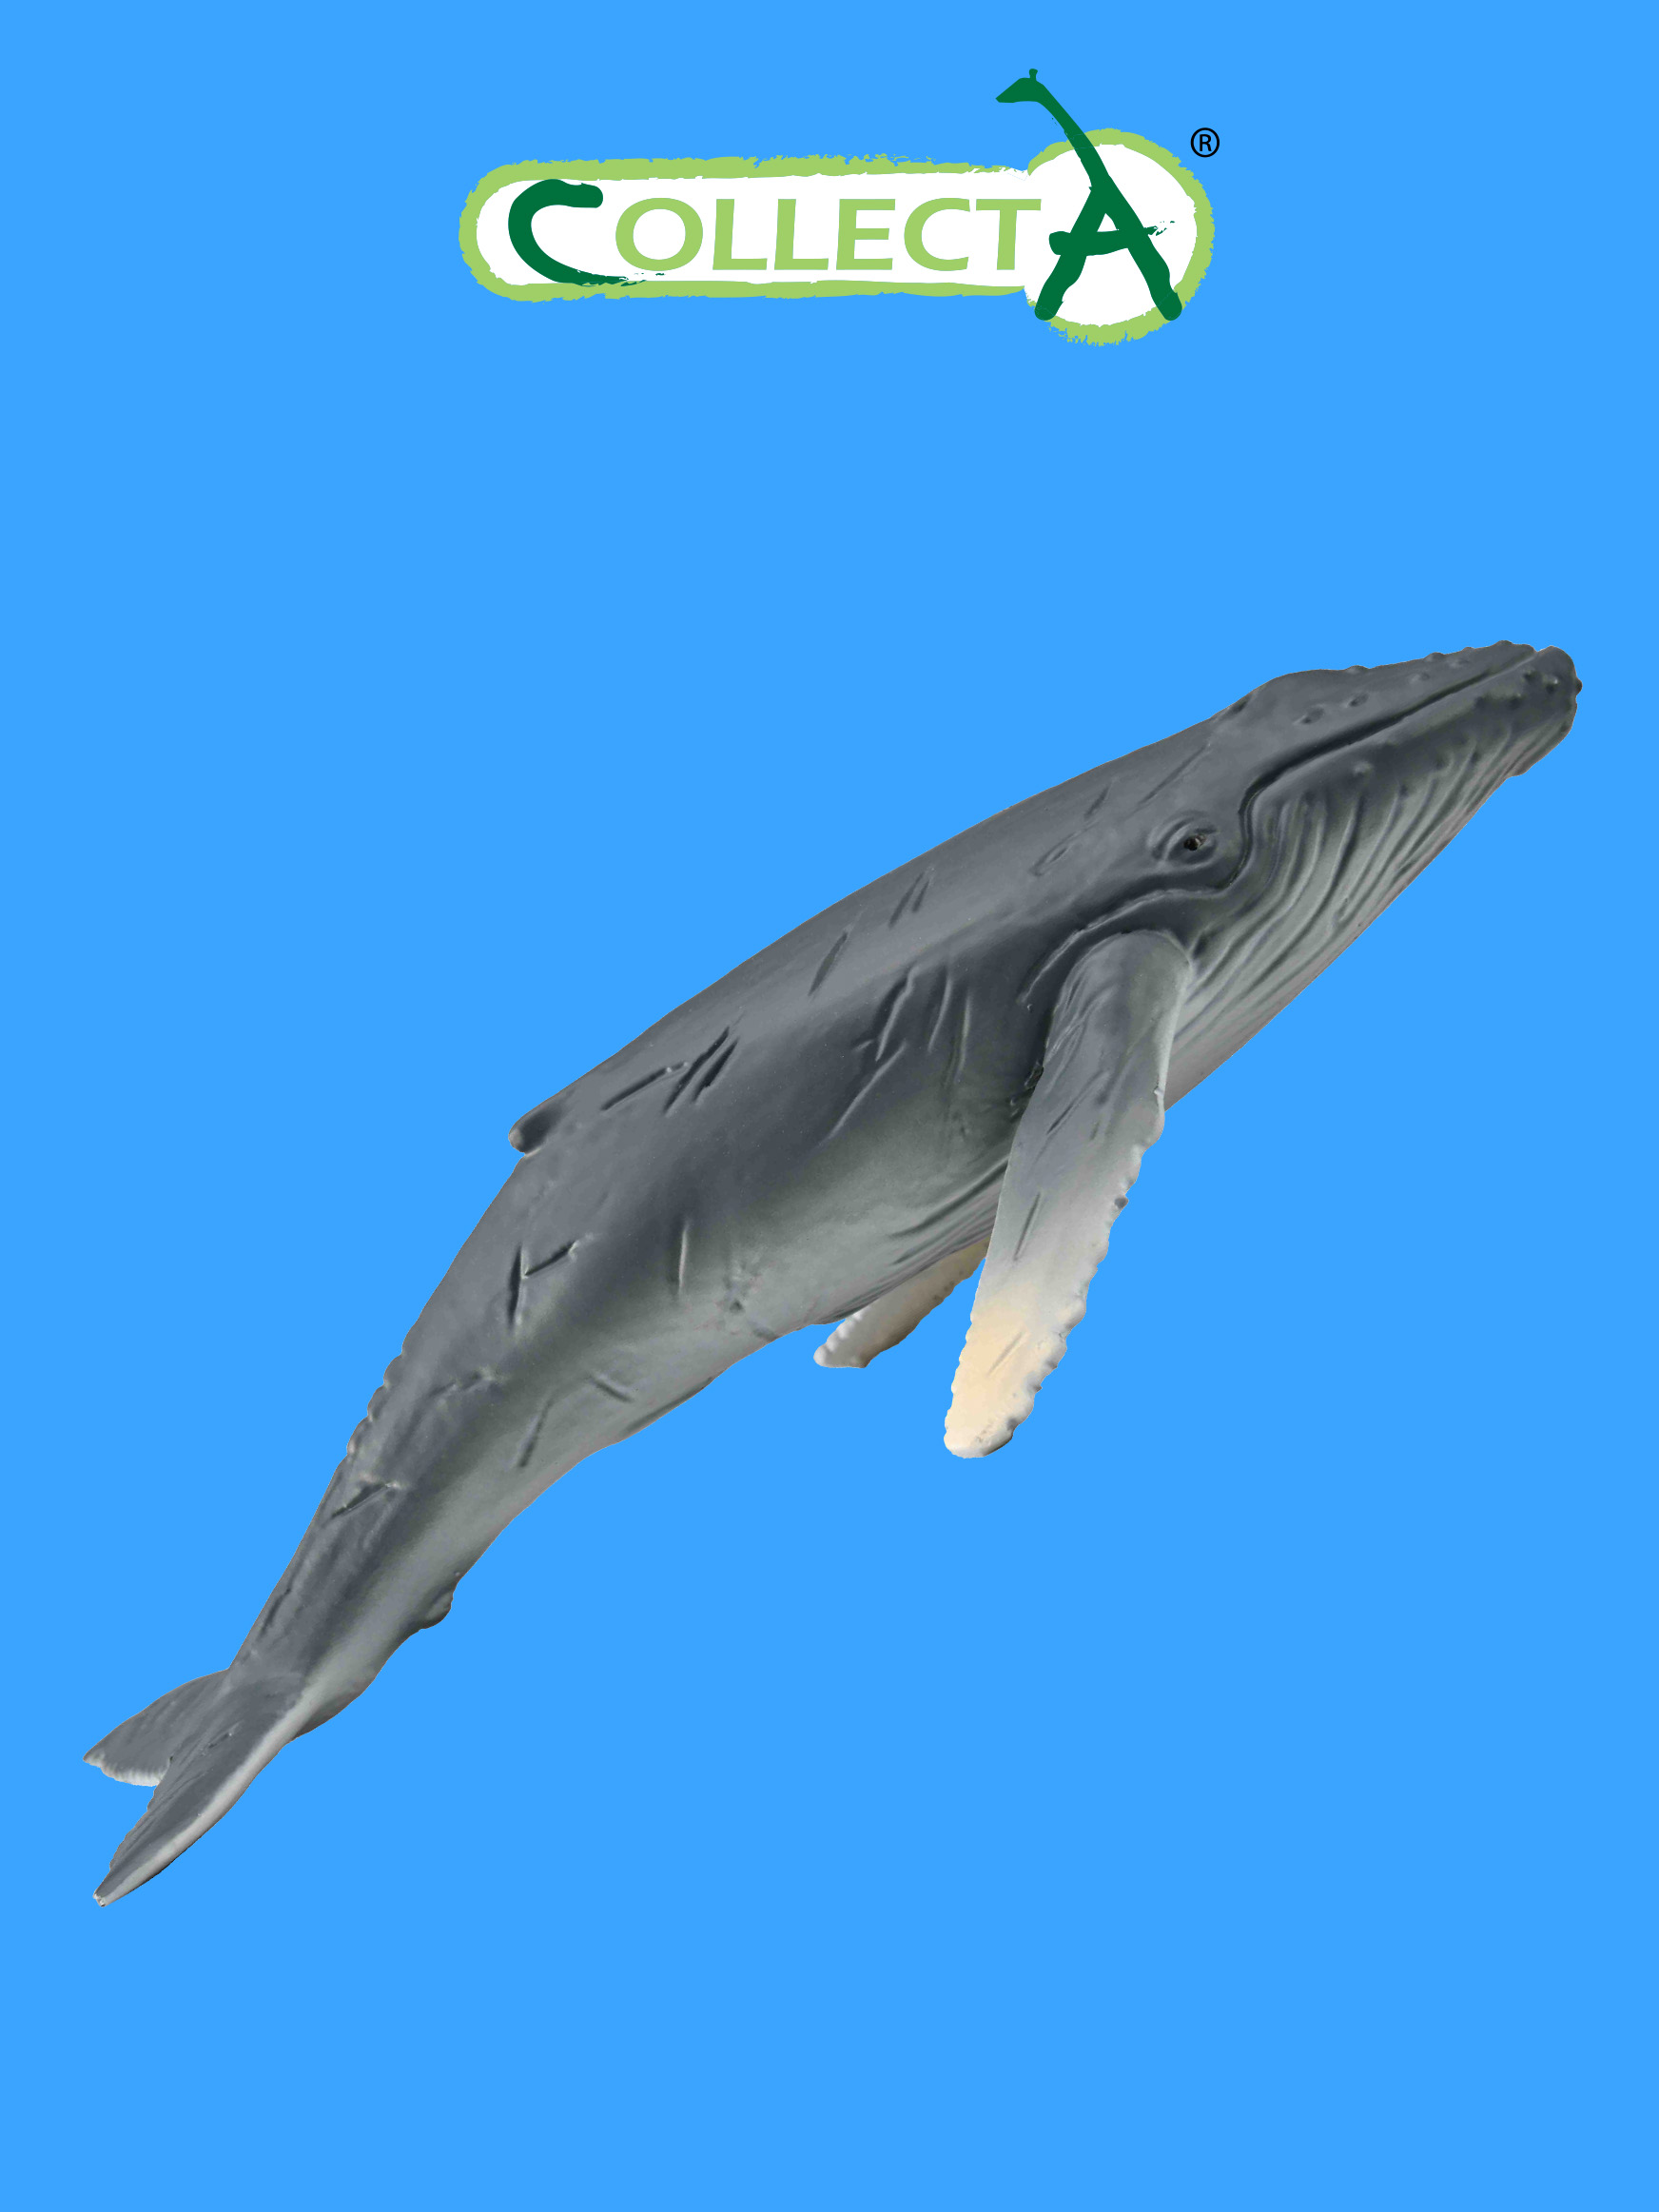 Фигурка Collecta животного Горбатый кит детёныш фигурка морского животного collecta детёныш пятнистого тюленя